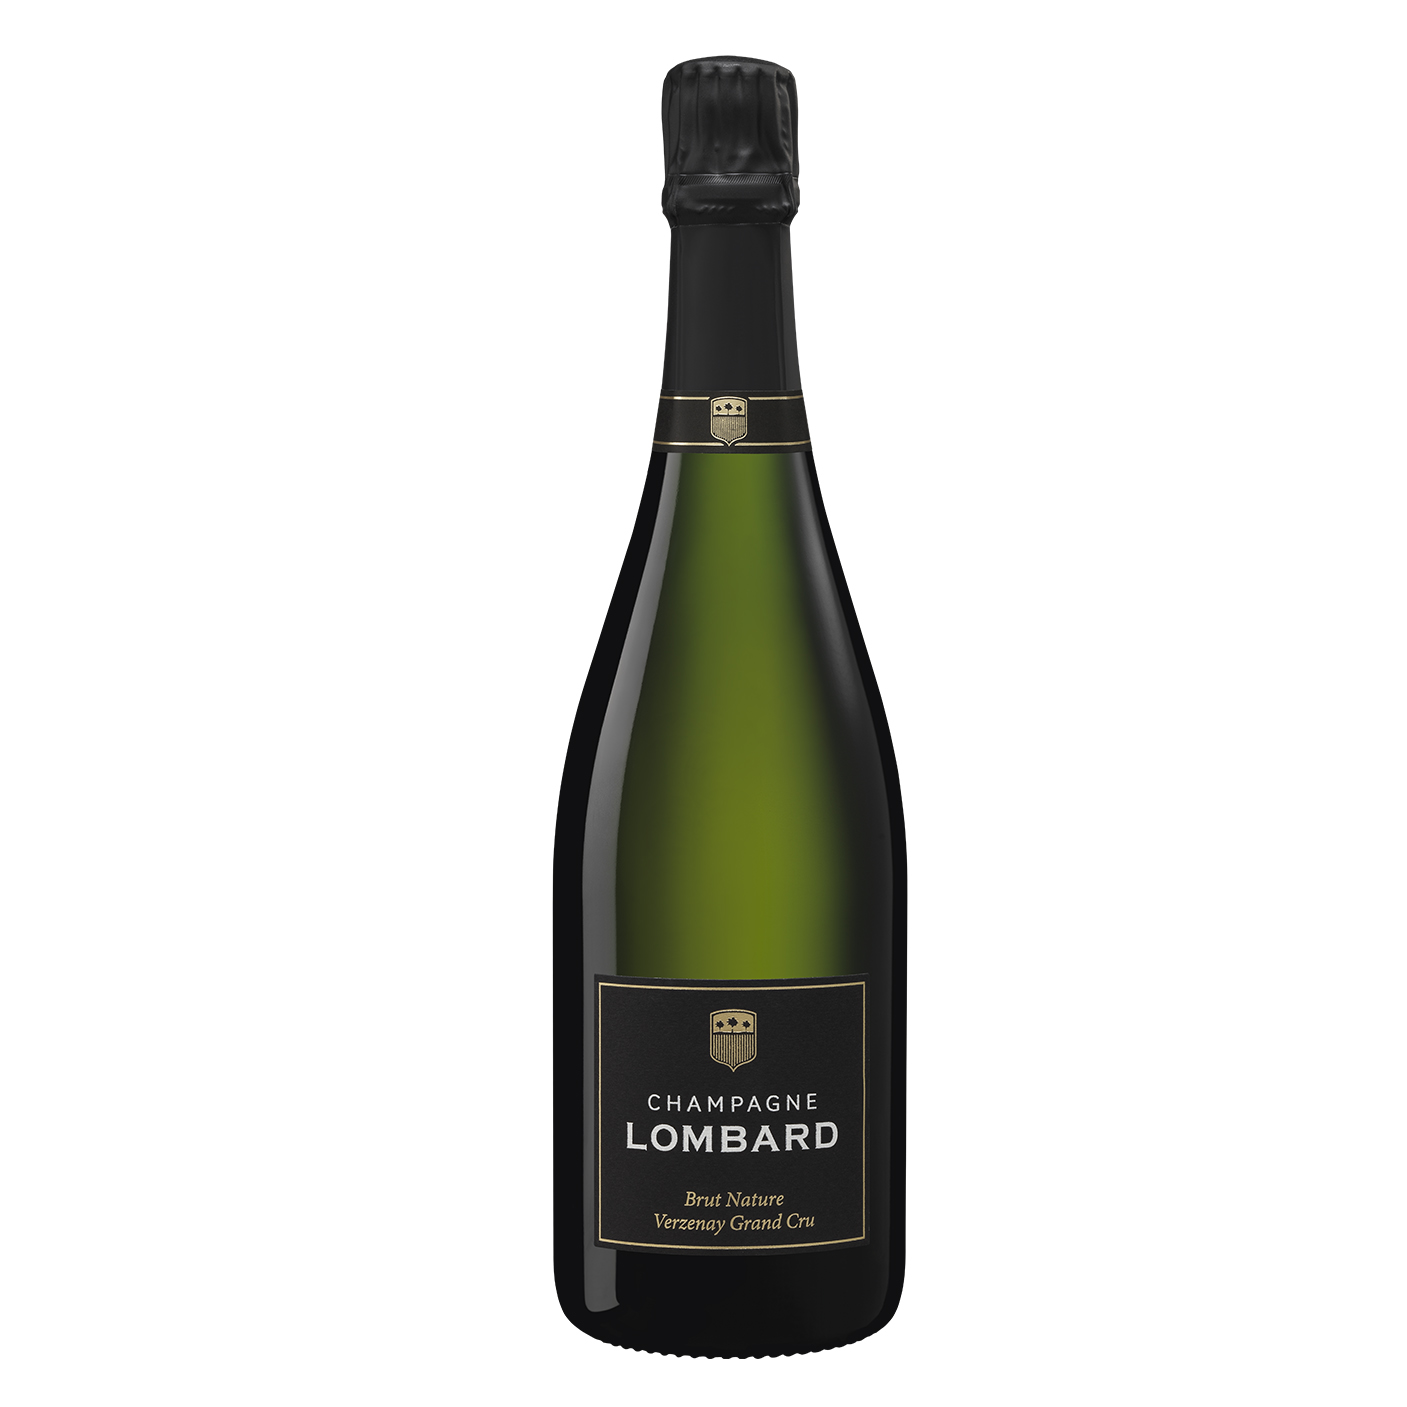 Champagne Lombard Verzenay Grand Cru. Botella de 75cl con cierre de corcho. En la parte inferior de la botella dispone de una etiqueta cuadrada en la que aparece el logotipo y nombre de la bodega y más abajo, el nombre del espumoso. En este caso, Champagne Lombard Premier Cru Verzenay Grand Cru.